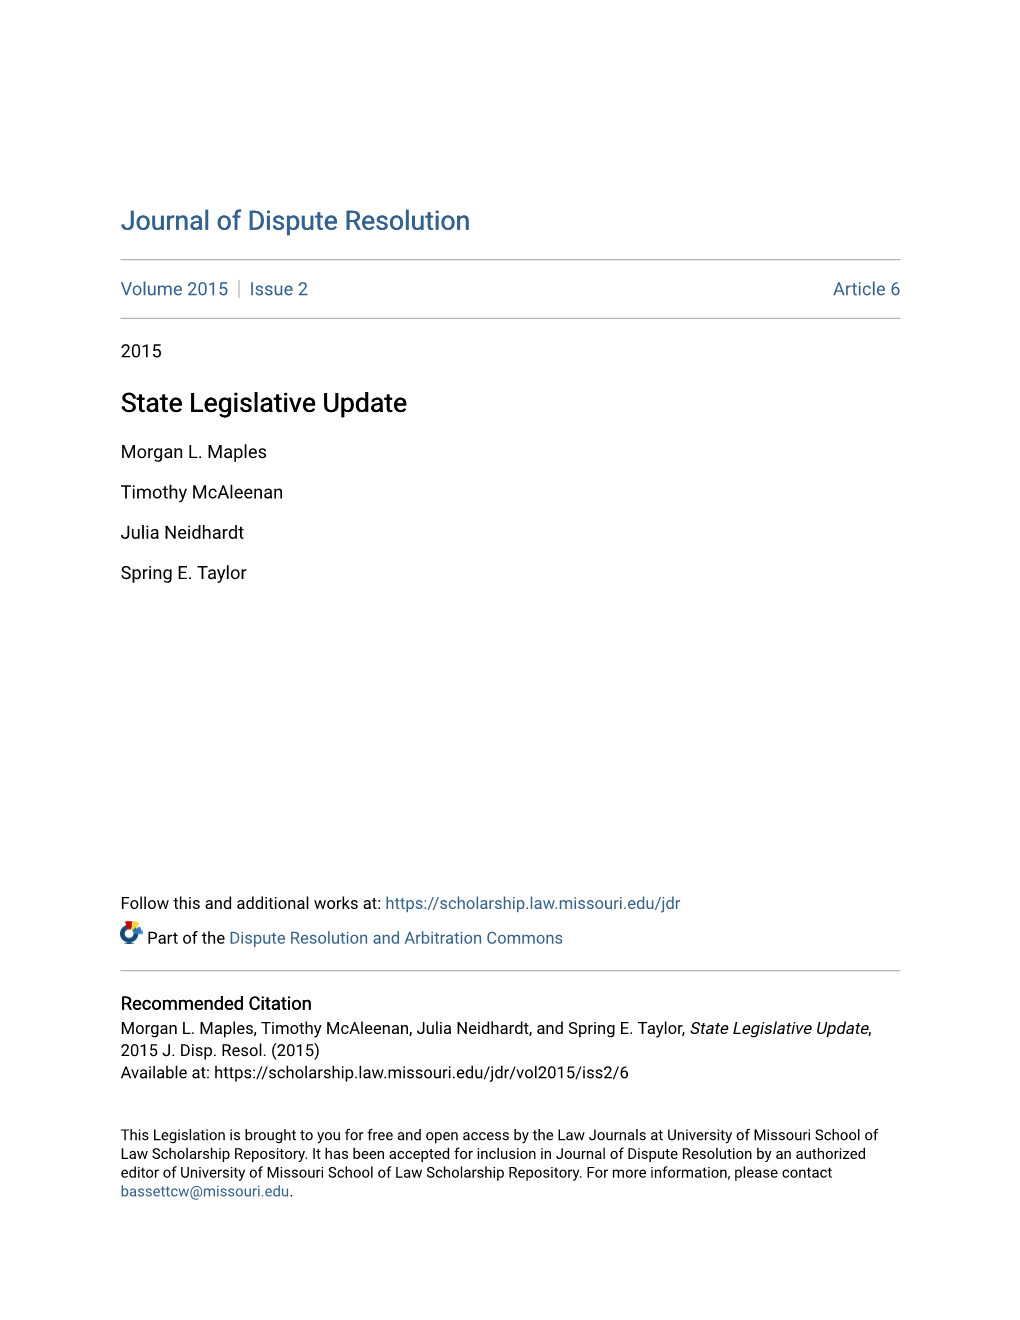 State Legislative Update